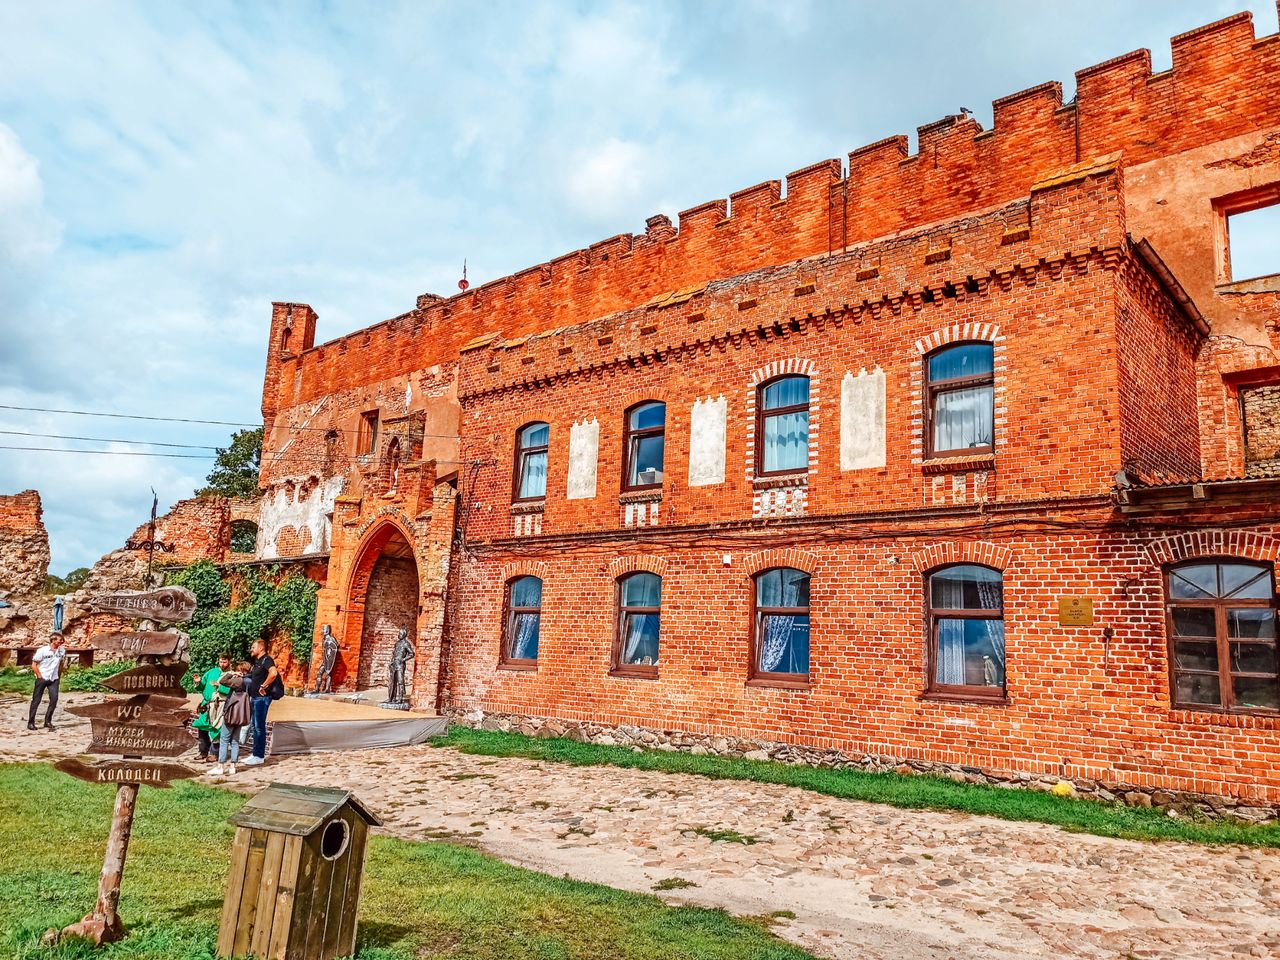 Три замка Восточной Пруссии в группе | Цена 2100₽, отзывы, описание экскурсии